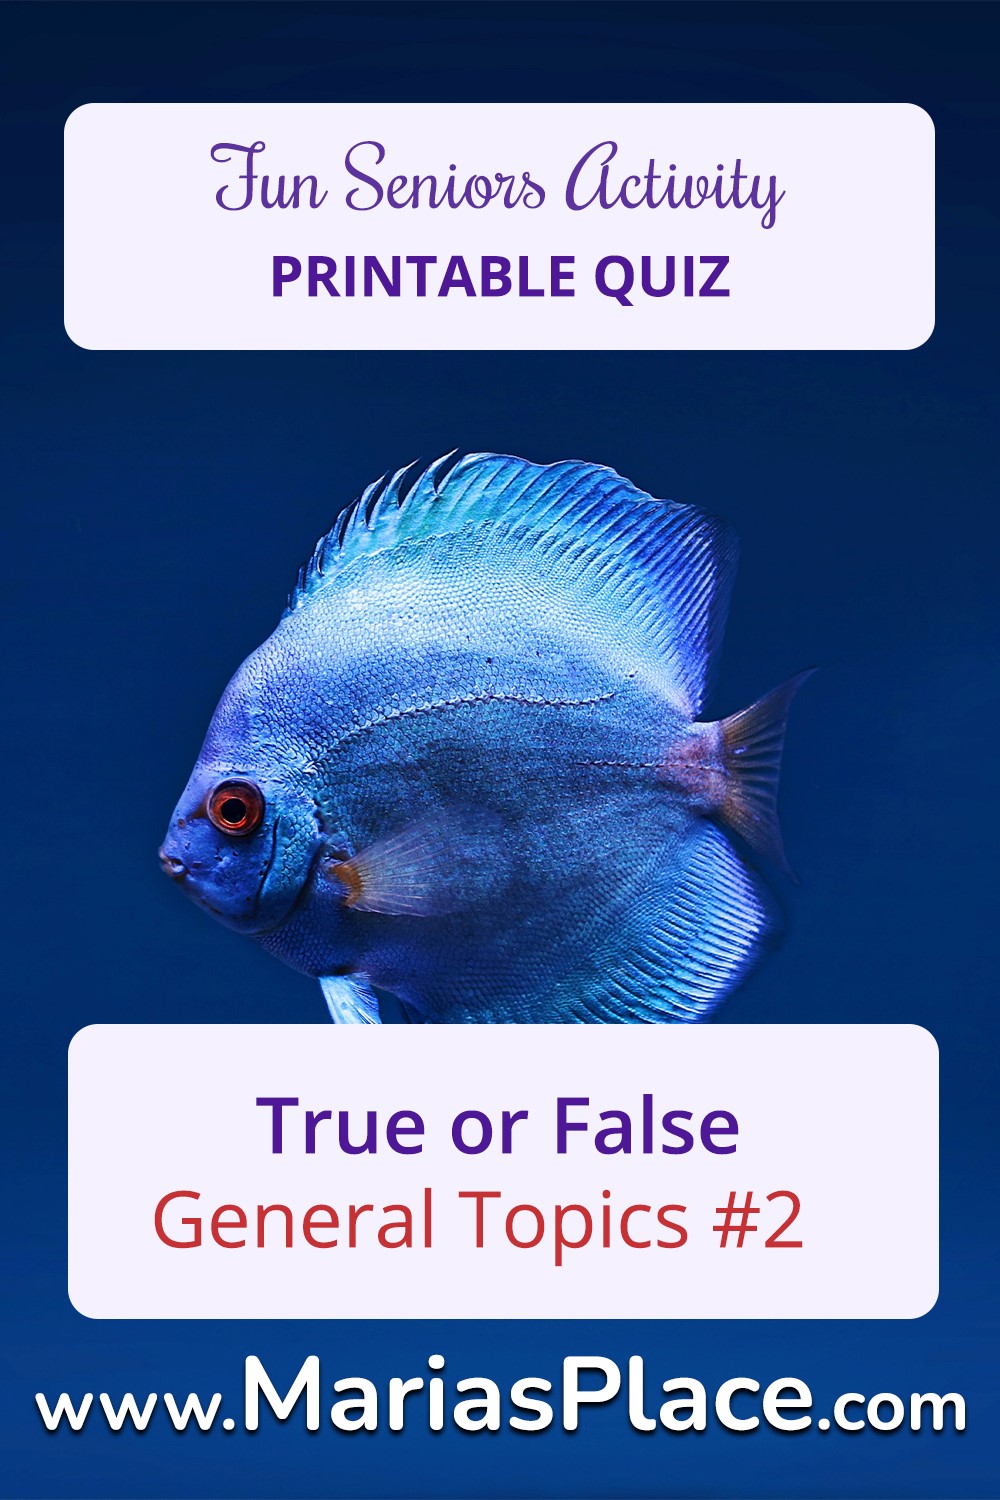 True or False, General Topics #2